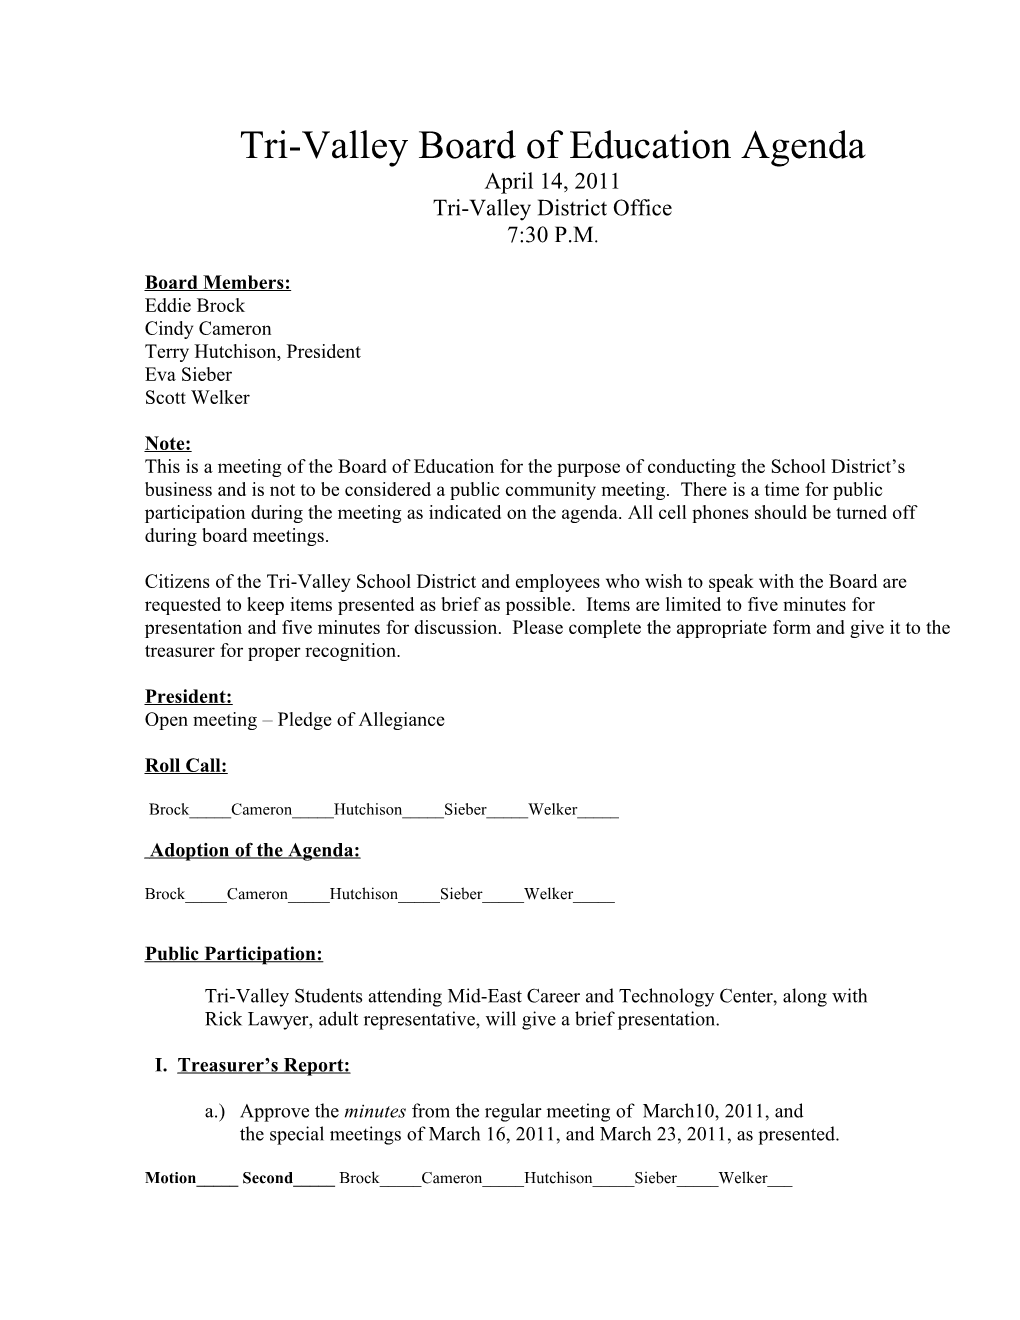 Tri-Valley Board of Education Agenda April 14, 2011